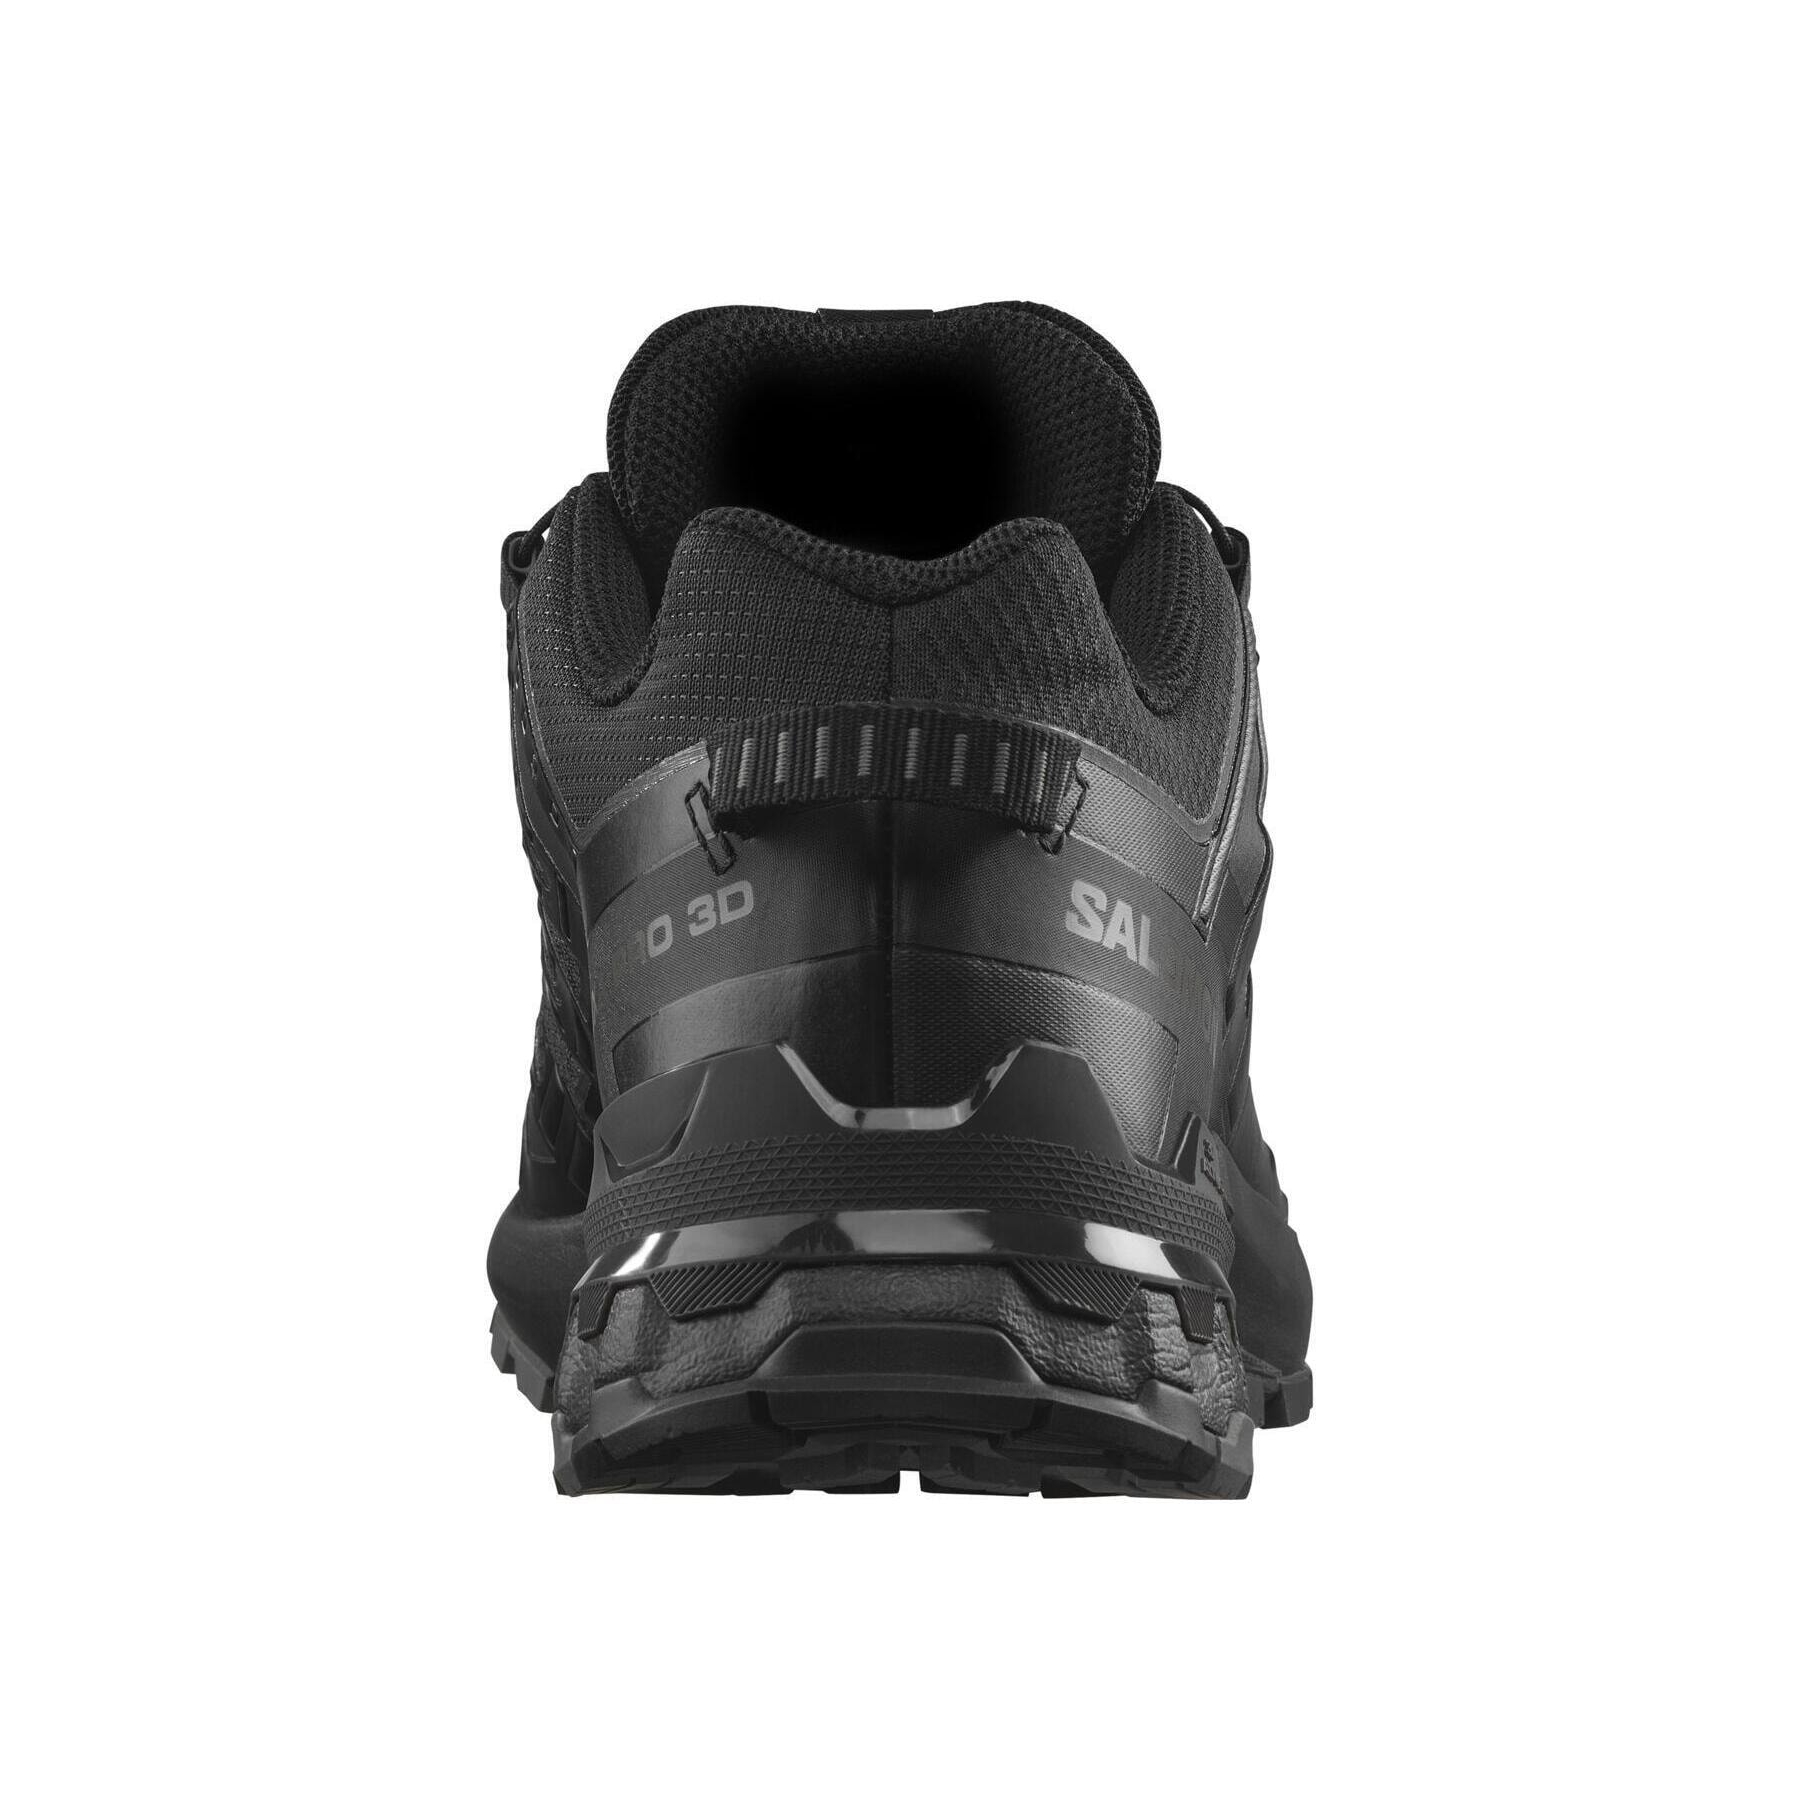 Salomon XA Pro Goretex Kadın Siyah Outdoor Ayakkabı (L47270800)